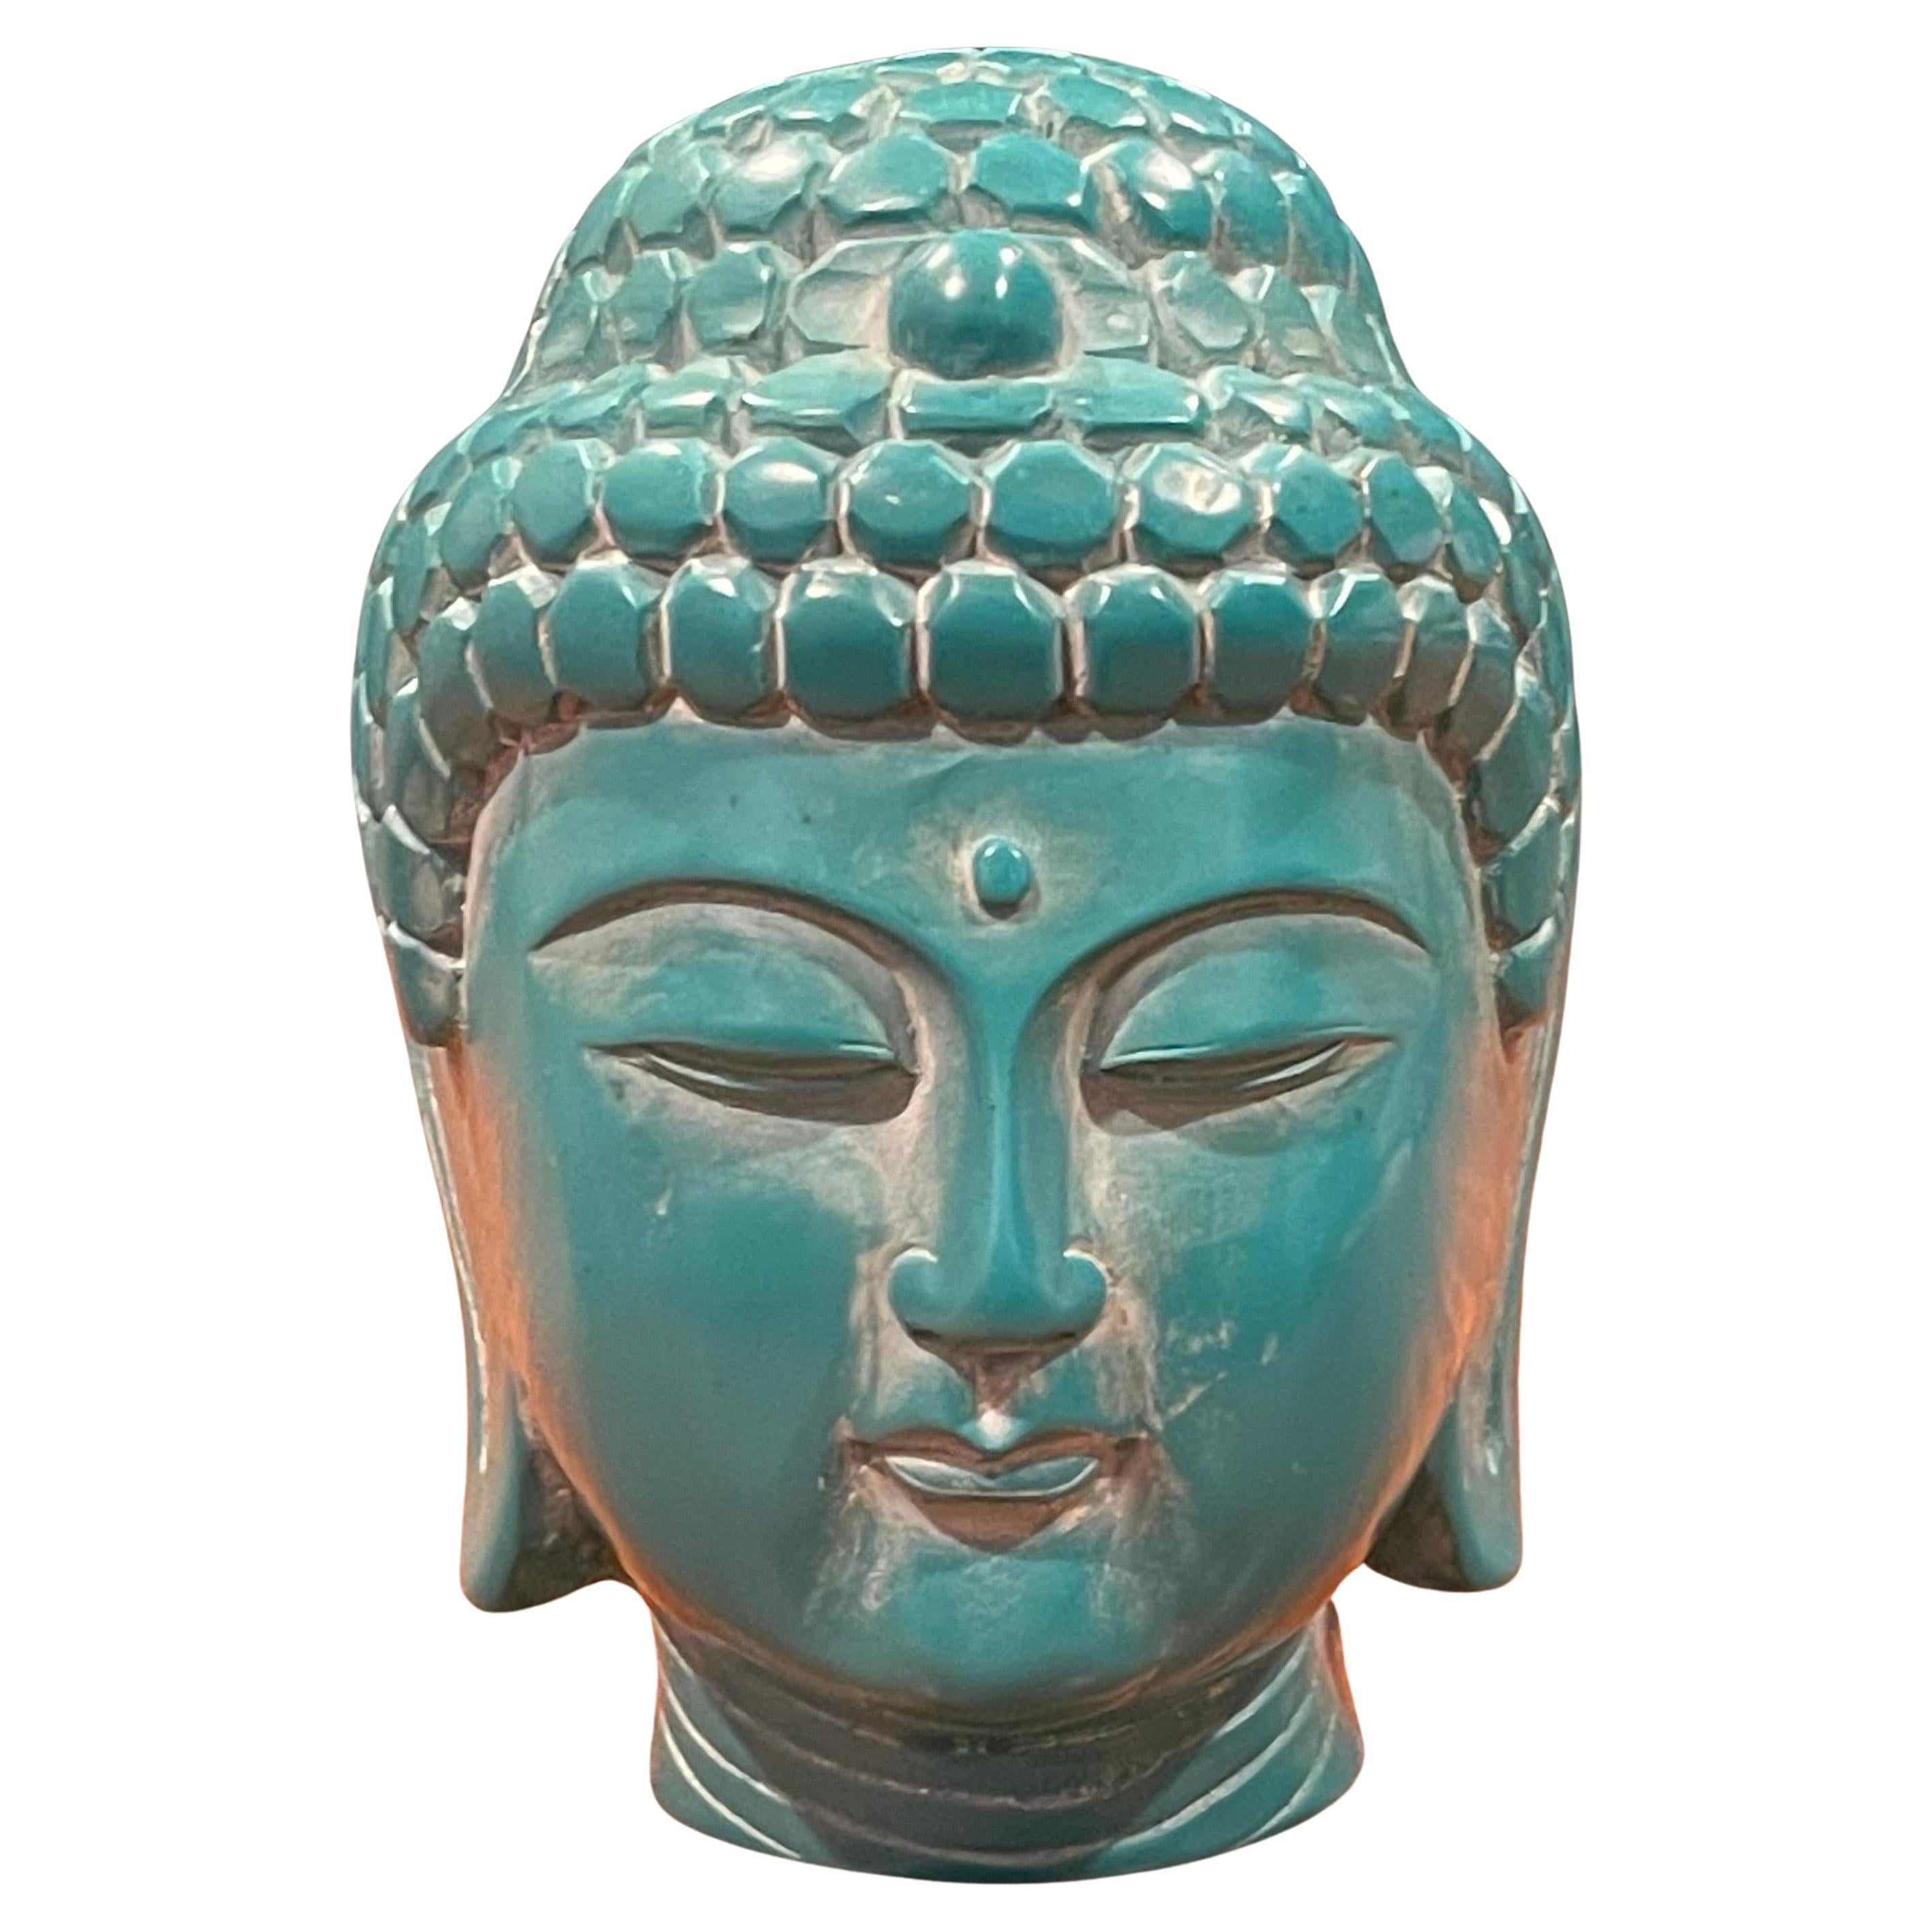 Une très belle tête de Bouddha vintage sculptée à la main en bakélite sarcelle sur un socle en bois de rose, vers les années 1970. La figure sculptée est une représentation du Bouddha Gautama, également connu sous le nom d'illuminé ou d'éveillé.  La